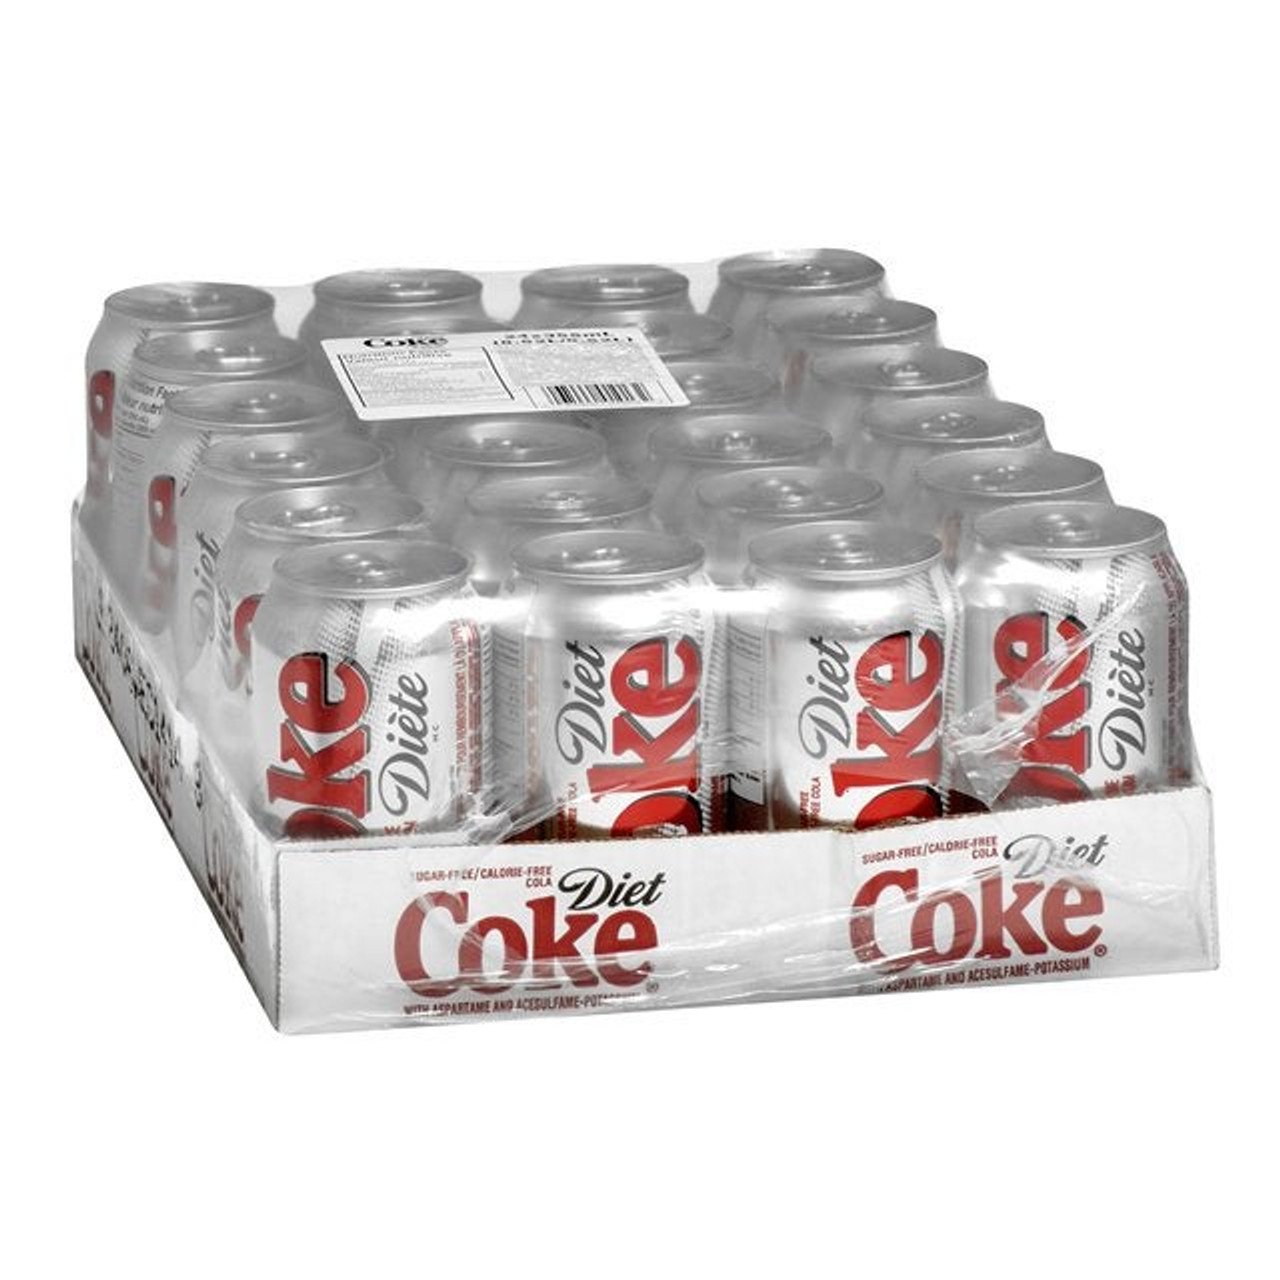 Coca Cola Diet Coca Cola Soft Drink